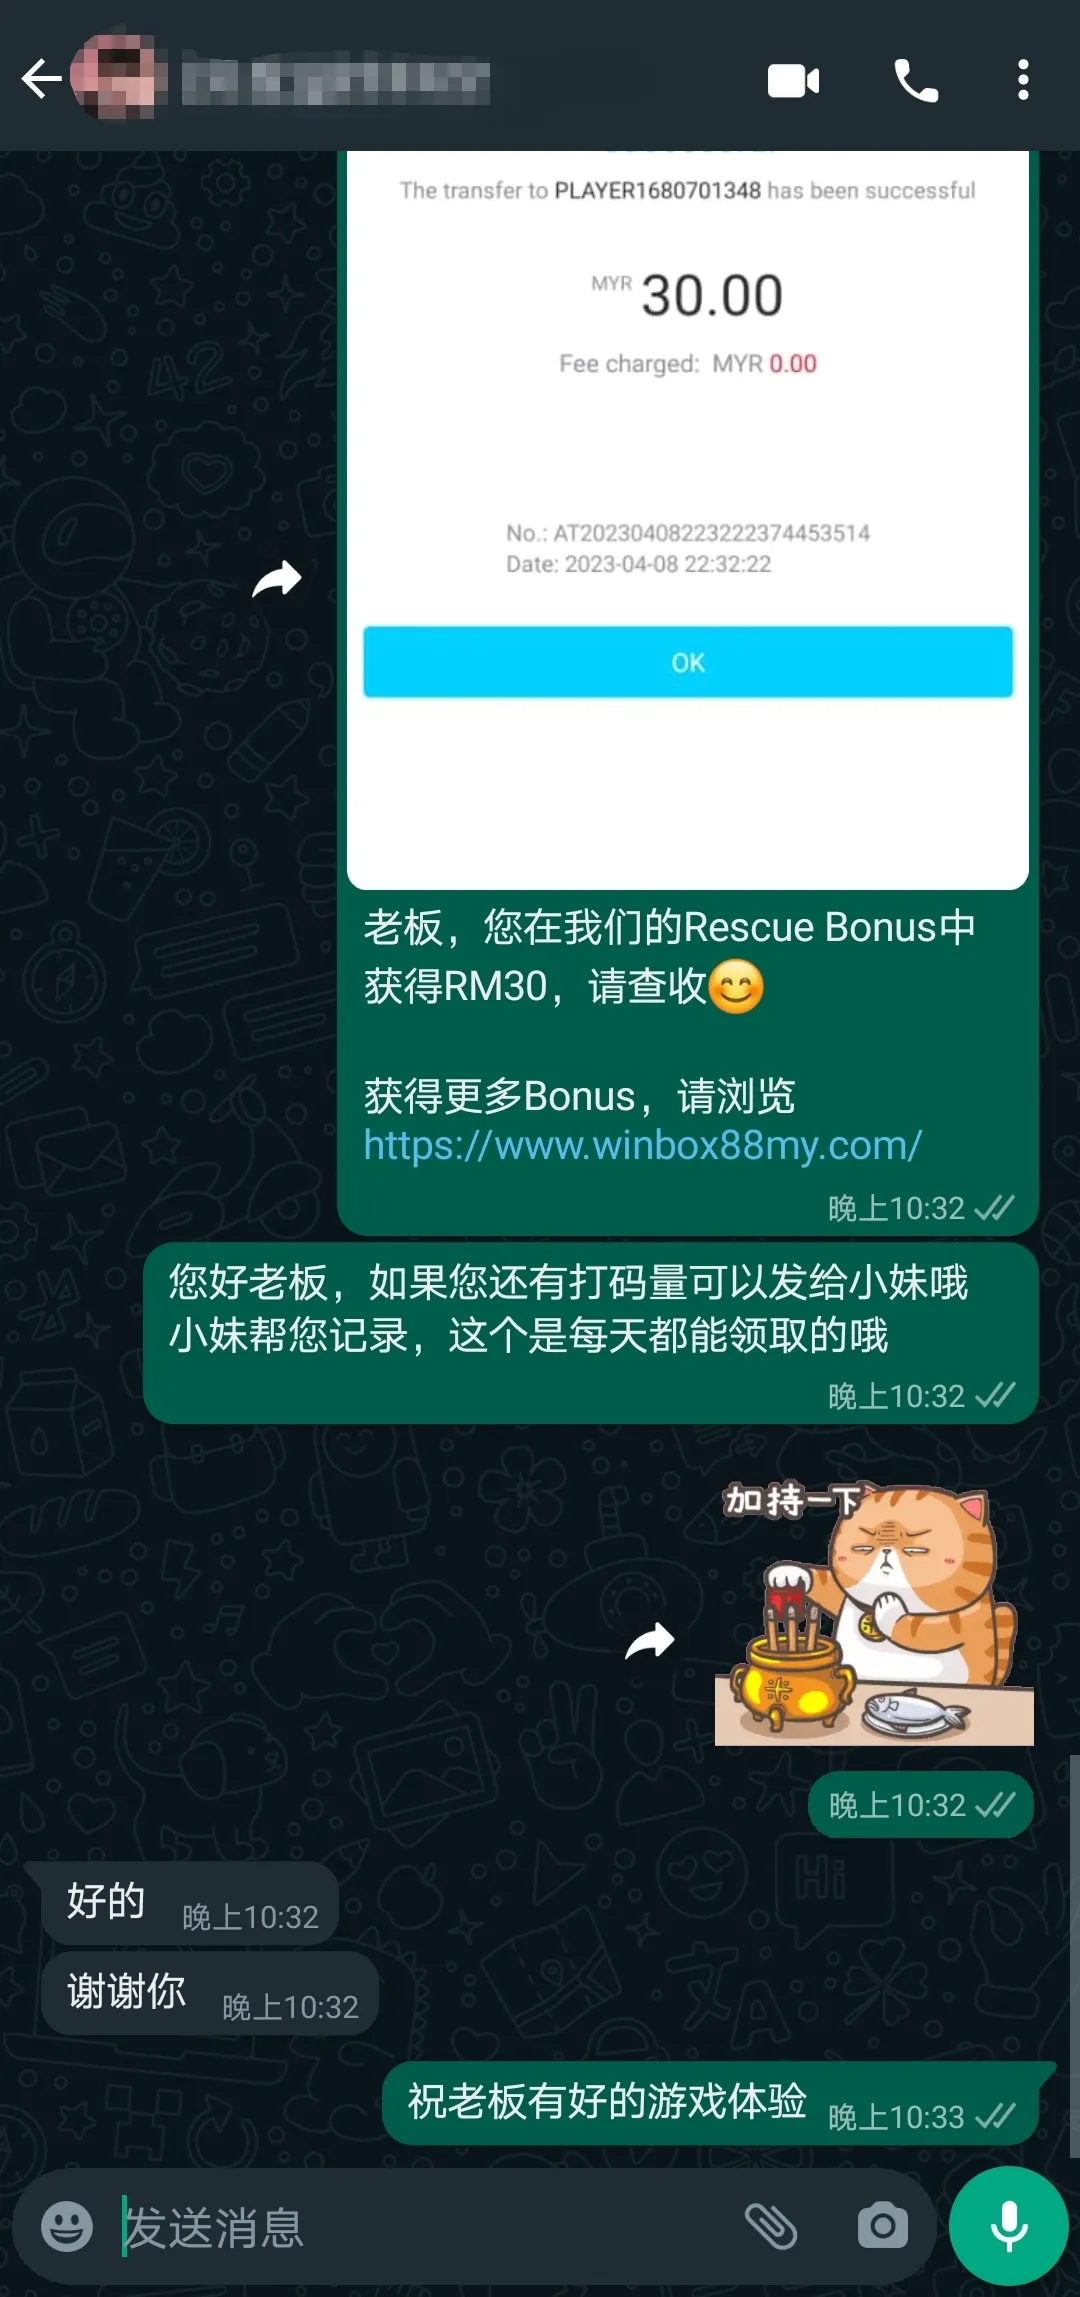 winbox rescue bonus past winner screenshot 54